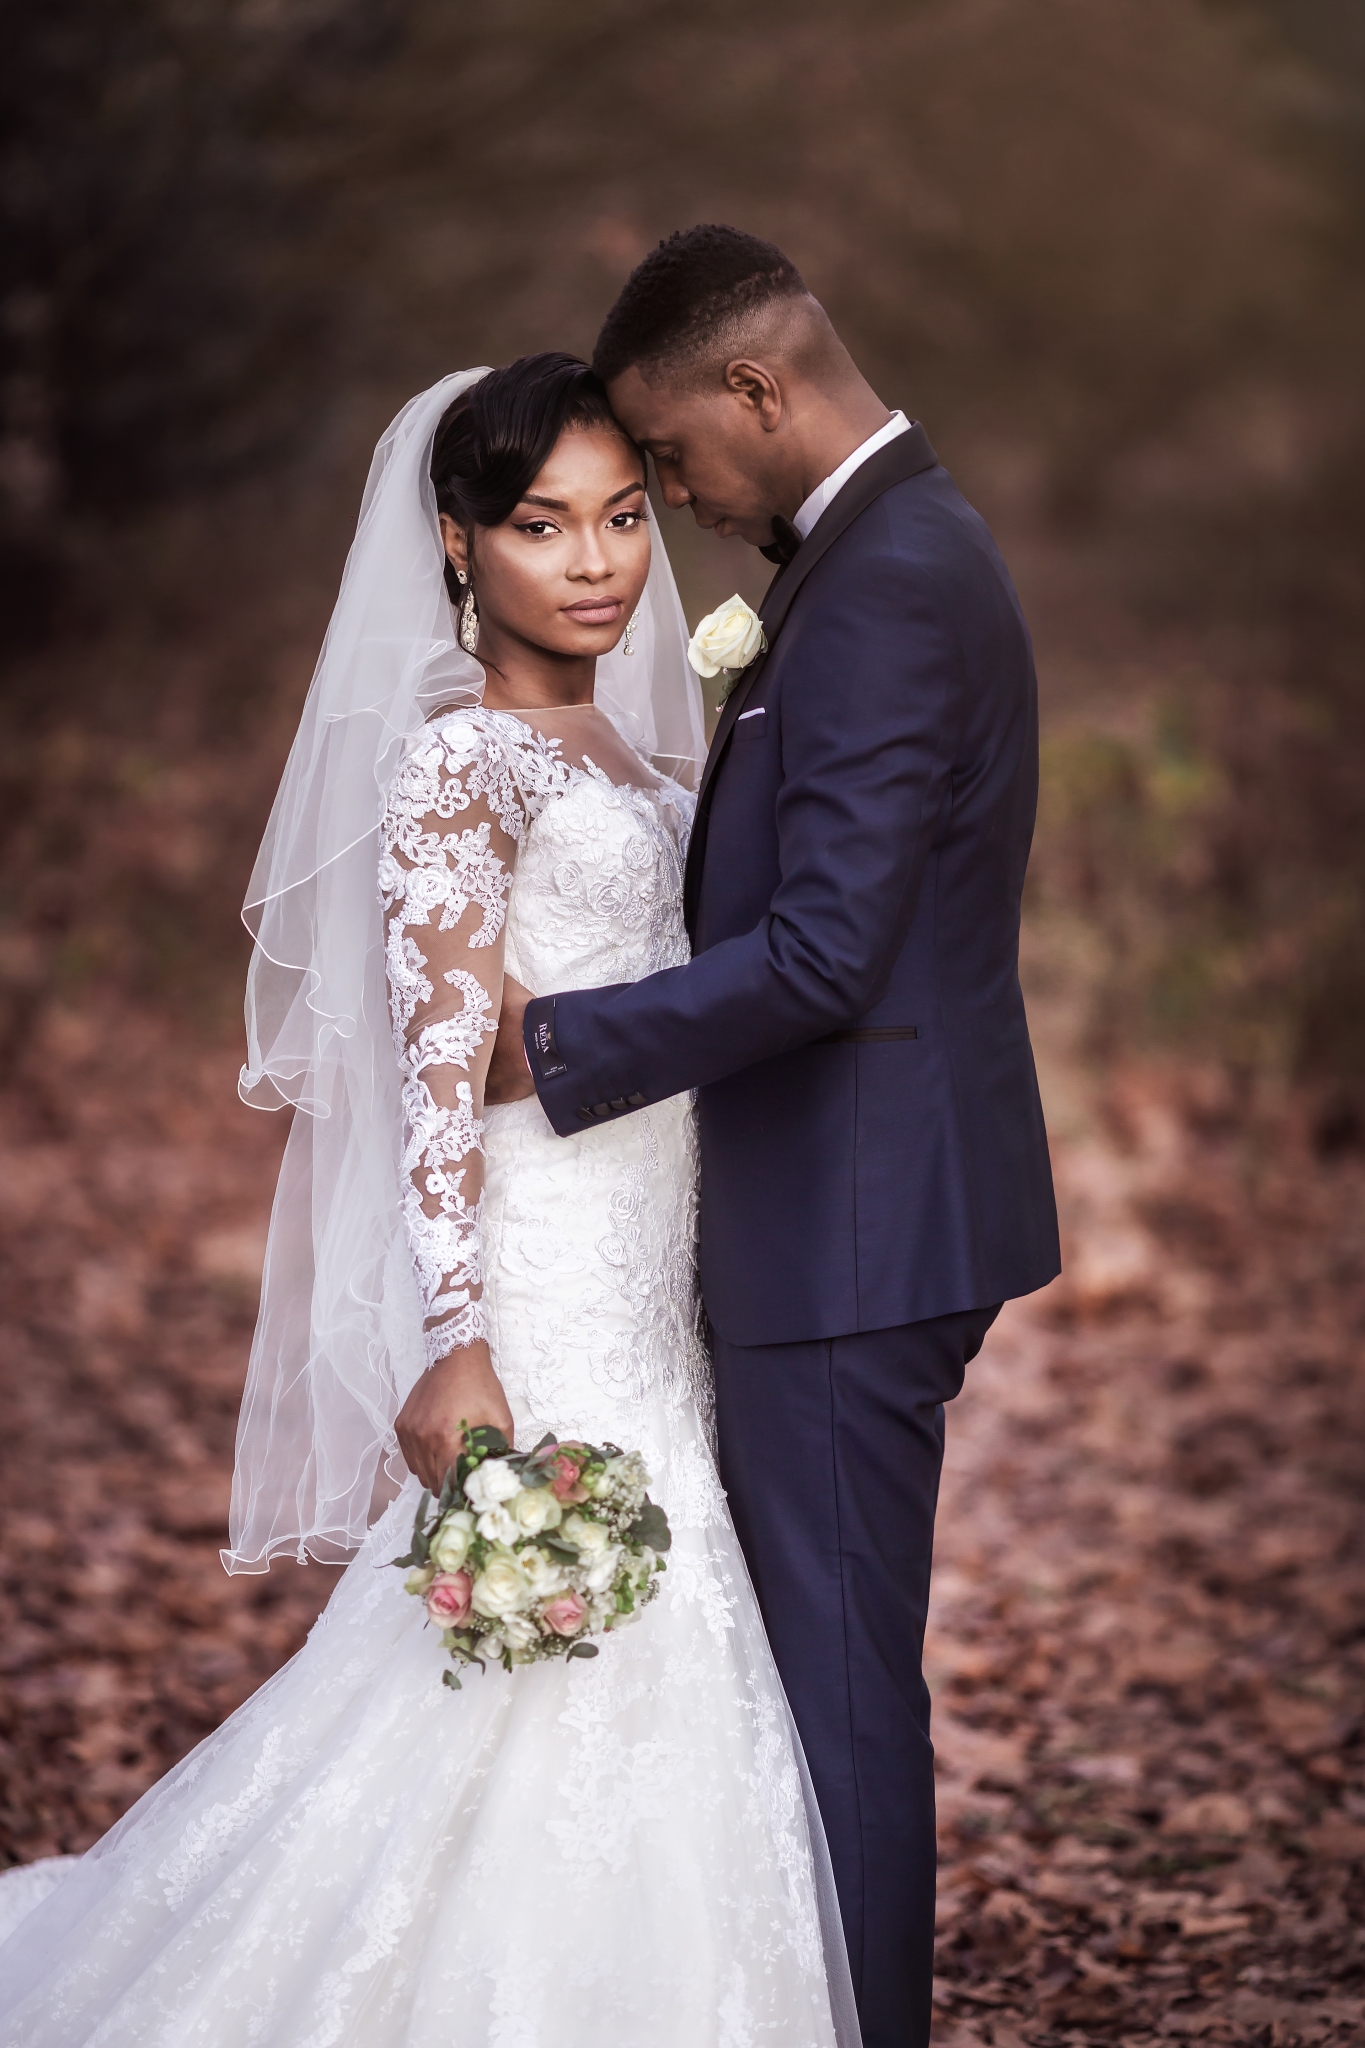 Le mariage de Jemimah & Eder 18 Janvier 2019